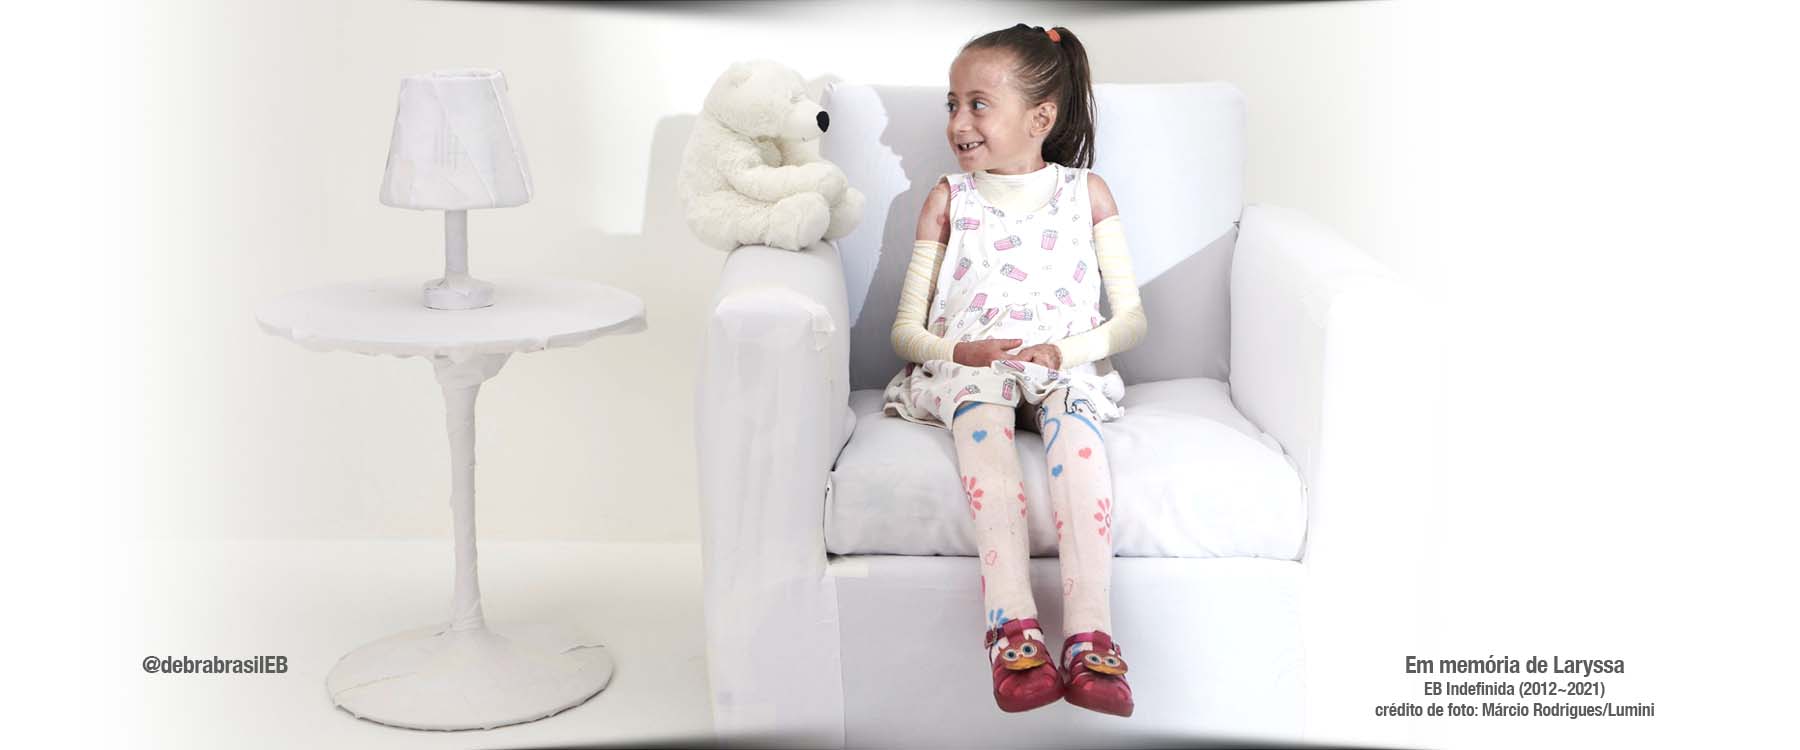 A Laryssa, menina com epidermólise bolhosa (EB) indefinida, com um sorriso maroto olhando com curiosidade um ursinho de pelúcia